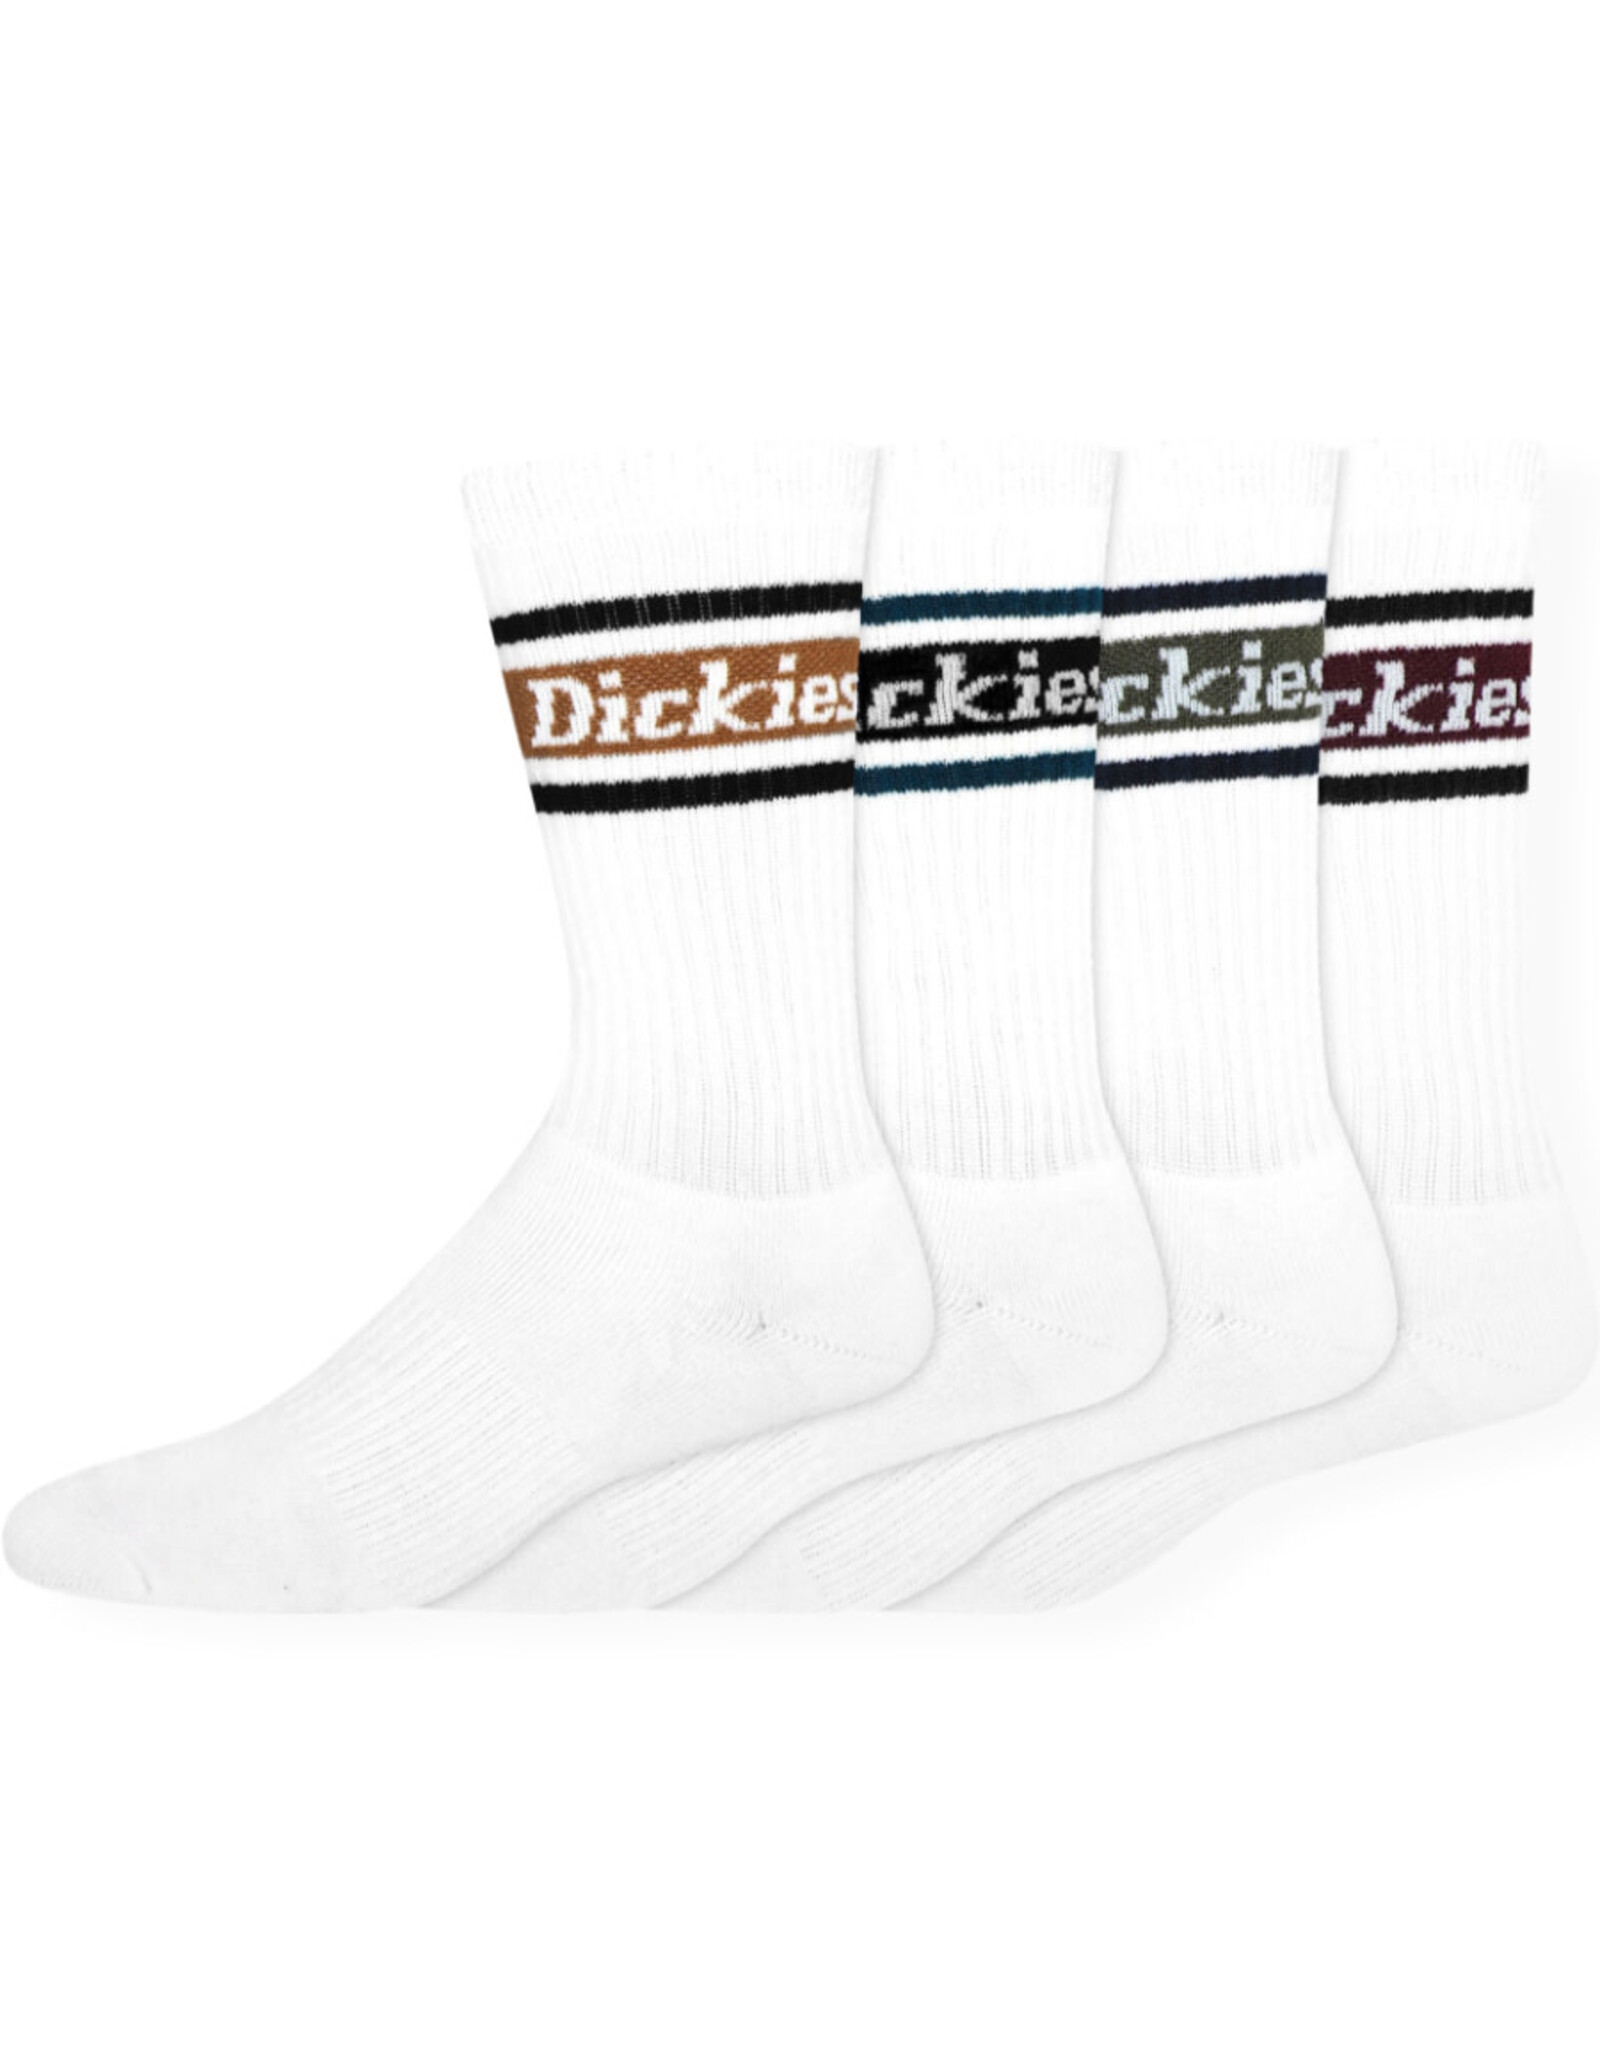 Dickies Dickies Socks Rugby Stripe Crew 6-12 (White/Fall/4-Pack)